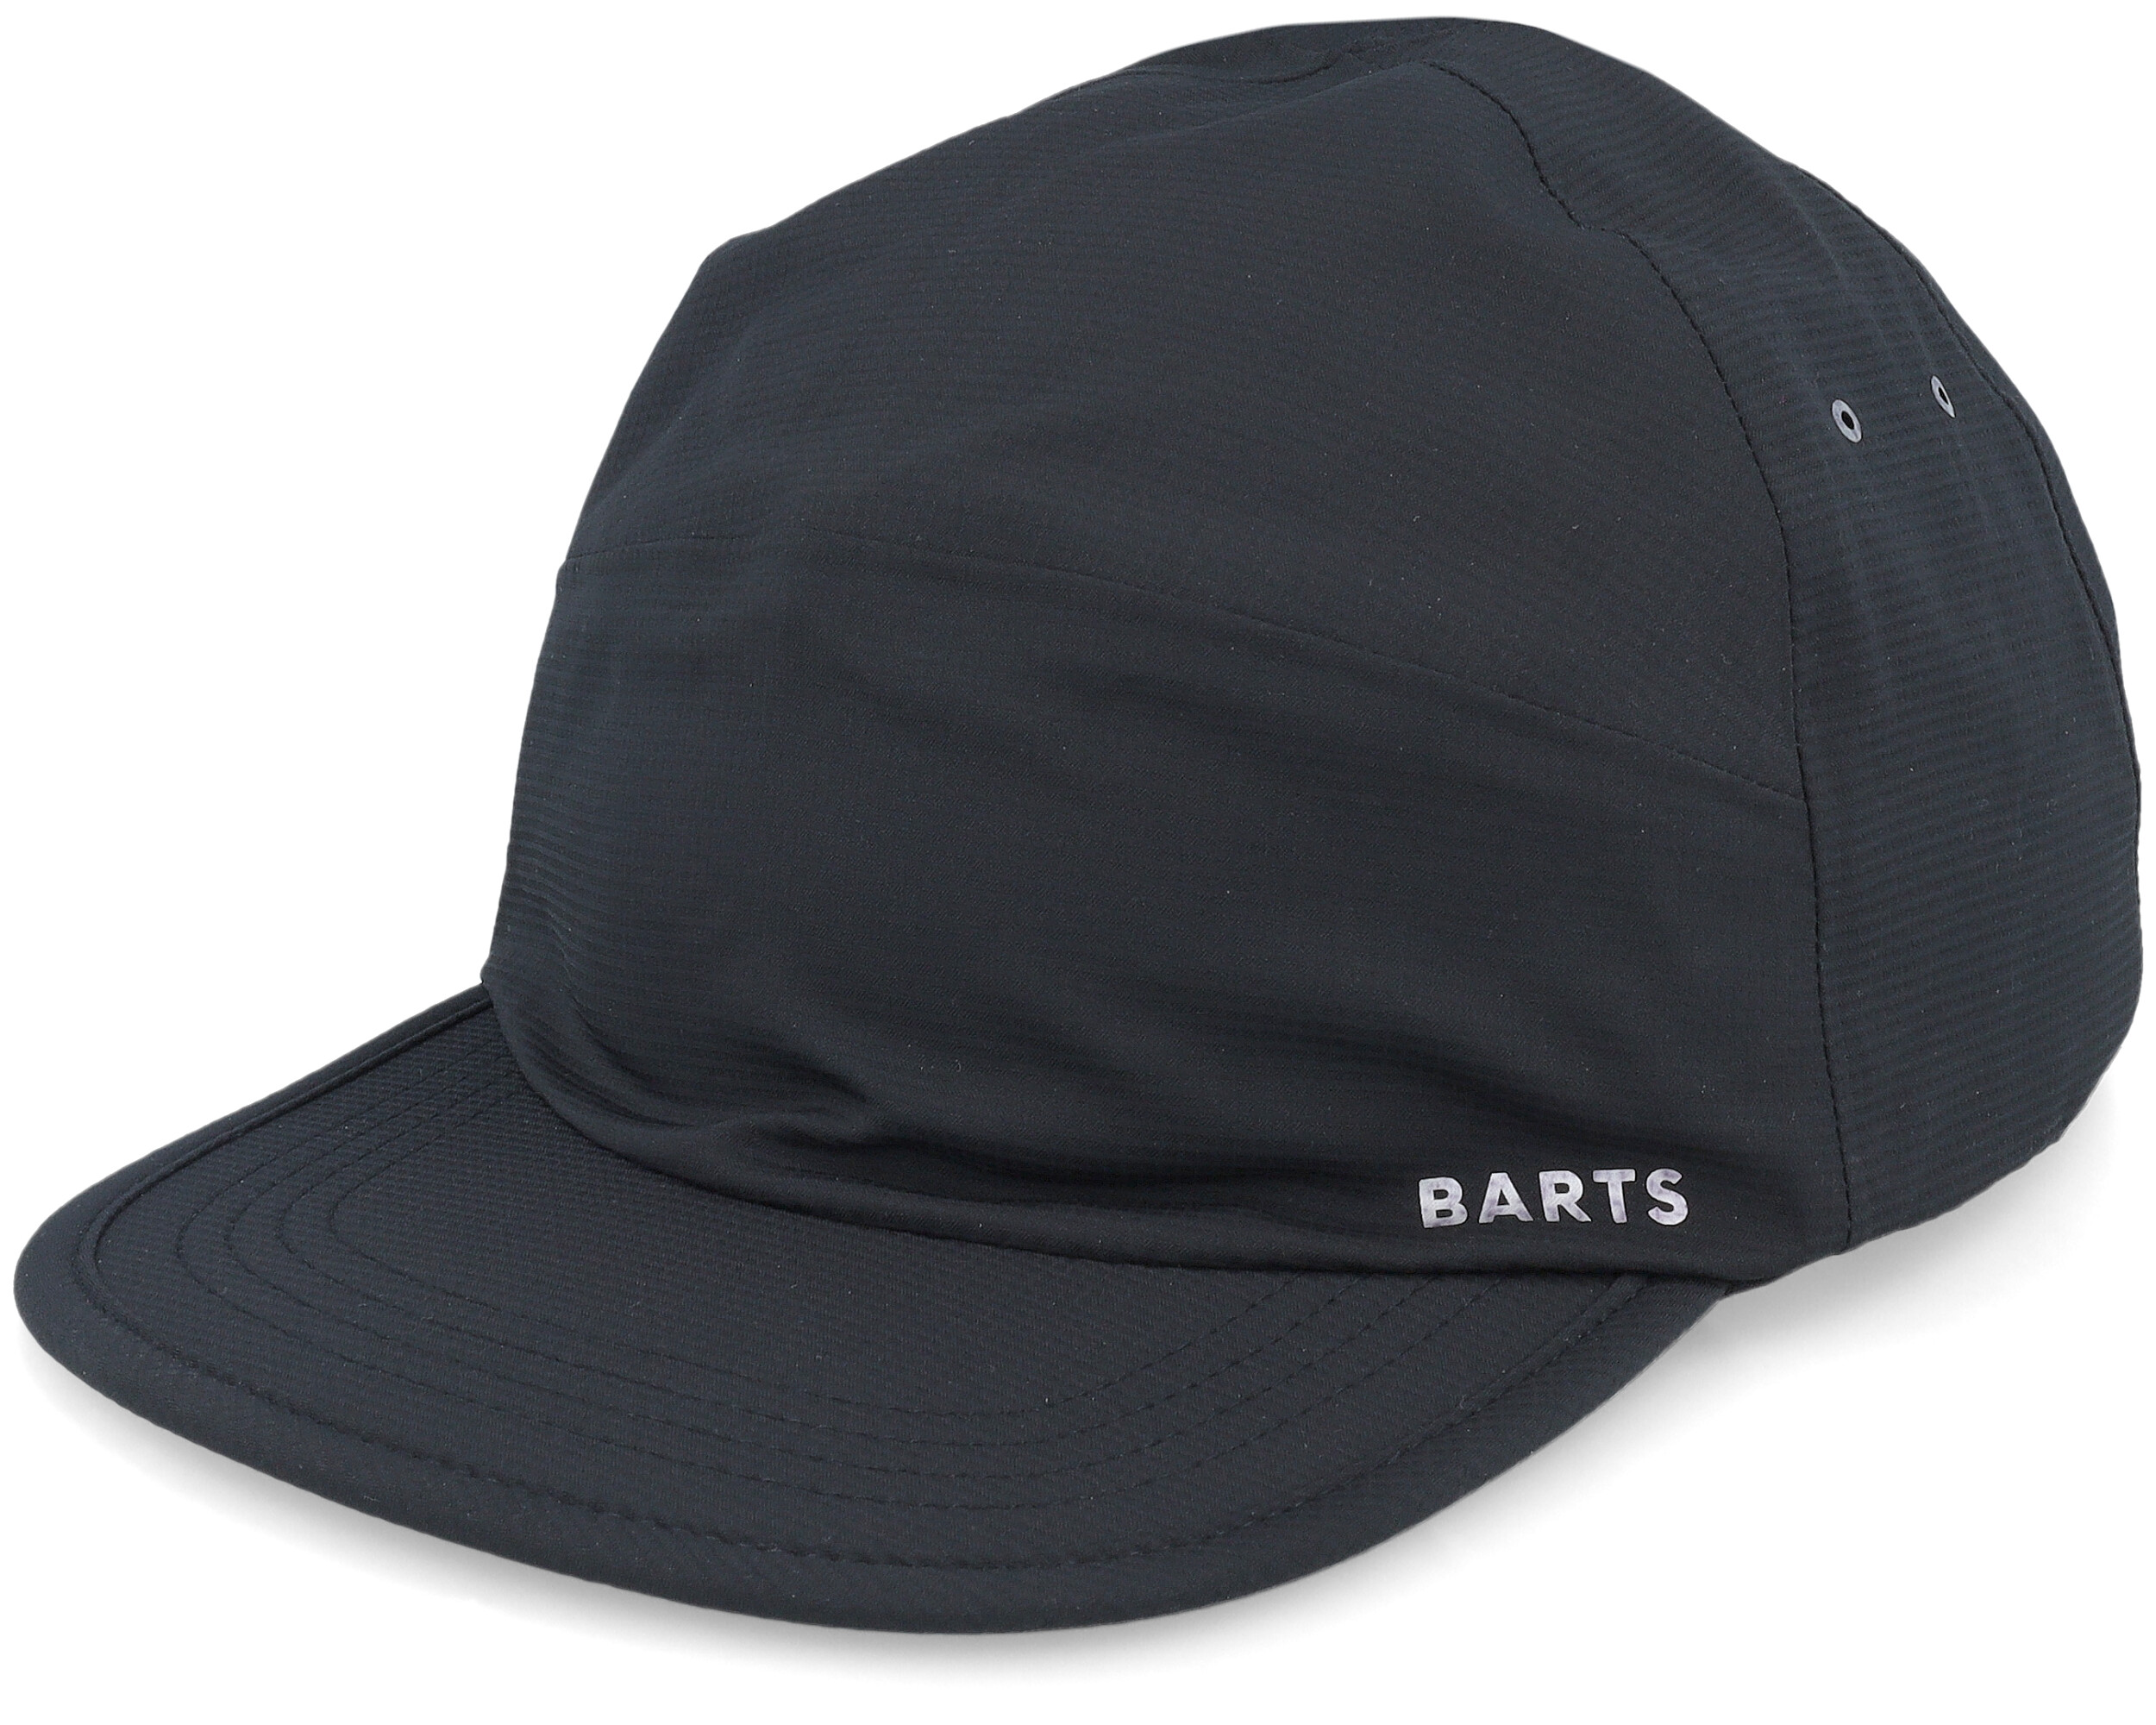 Gardnes Cap Black 5-Panel - Barts cap